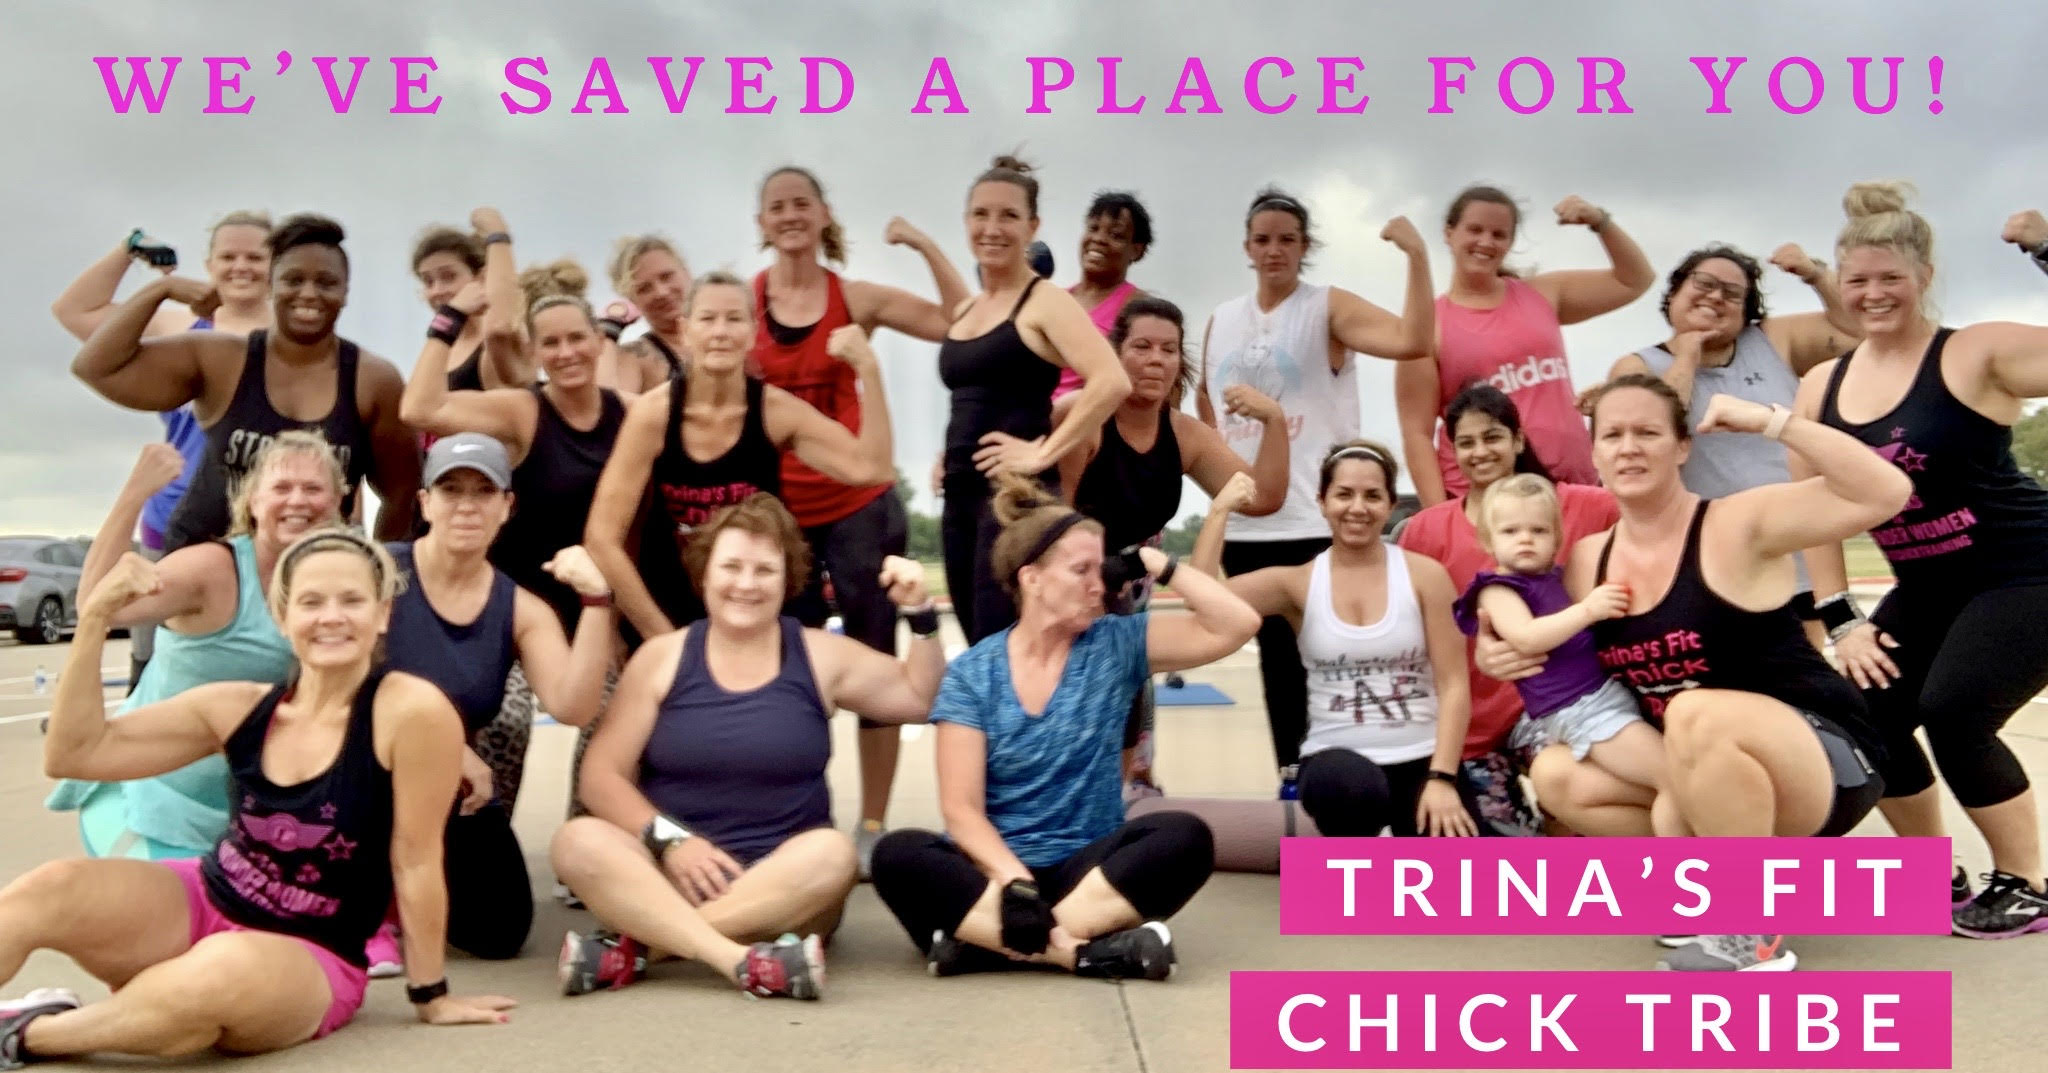 Trina's Fit Chick Tribe | Trina's Fit Chick Tribe